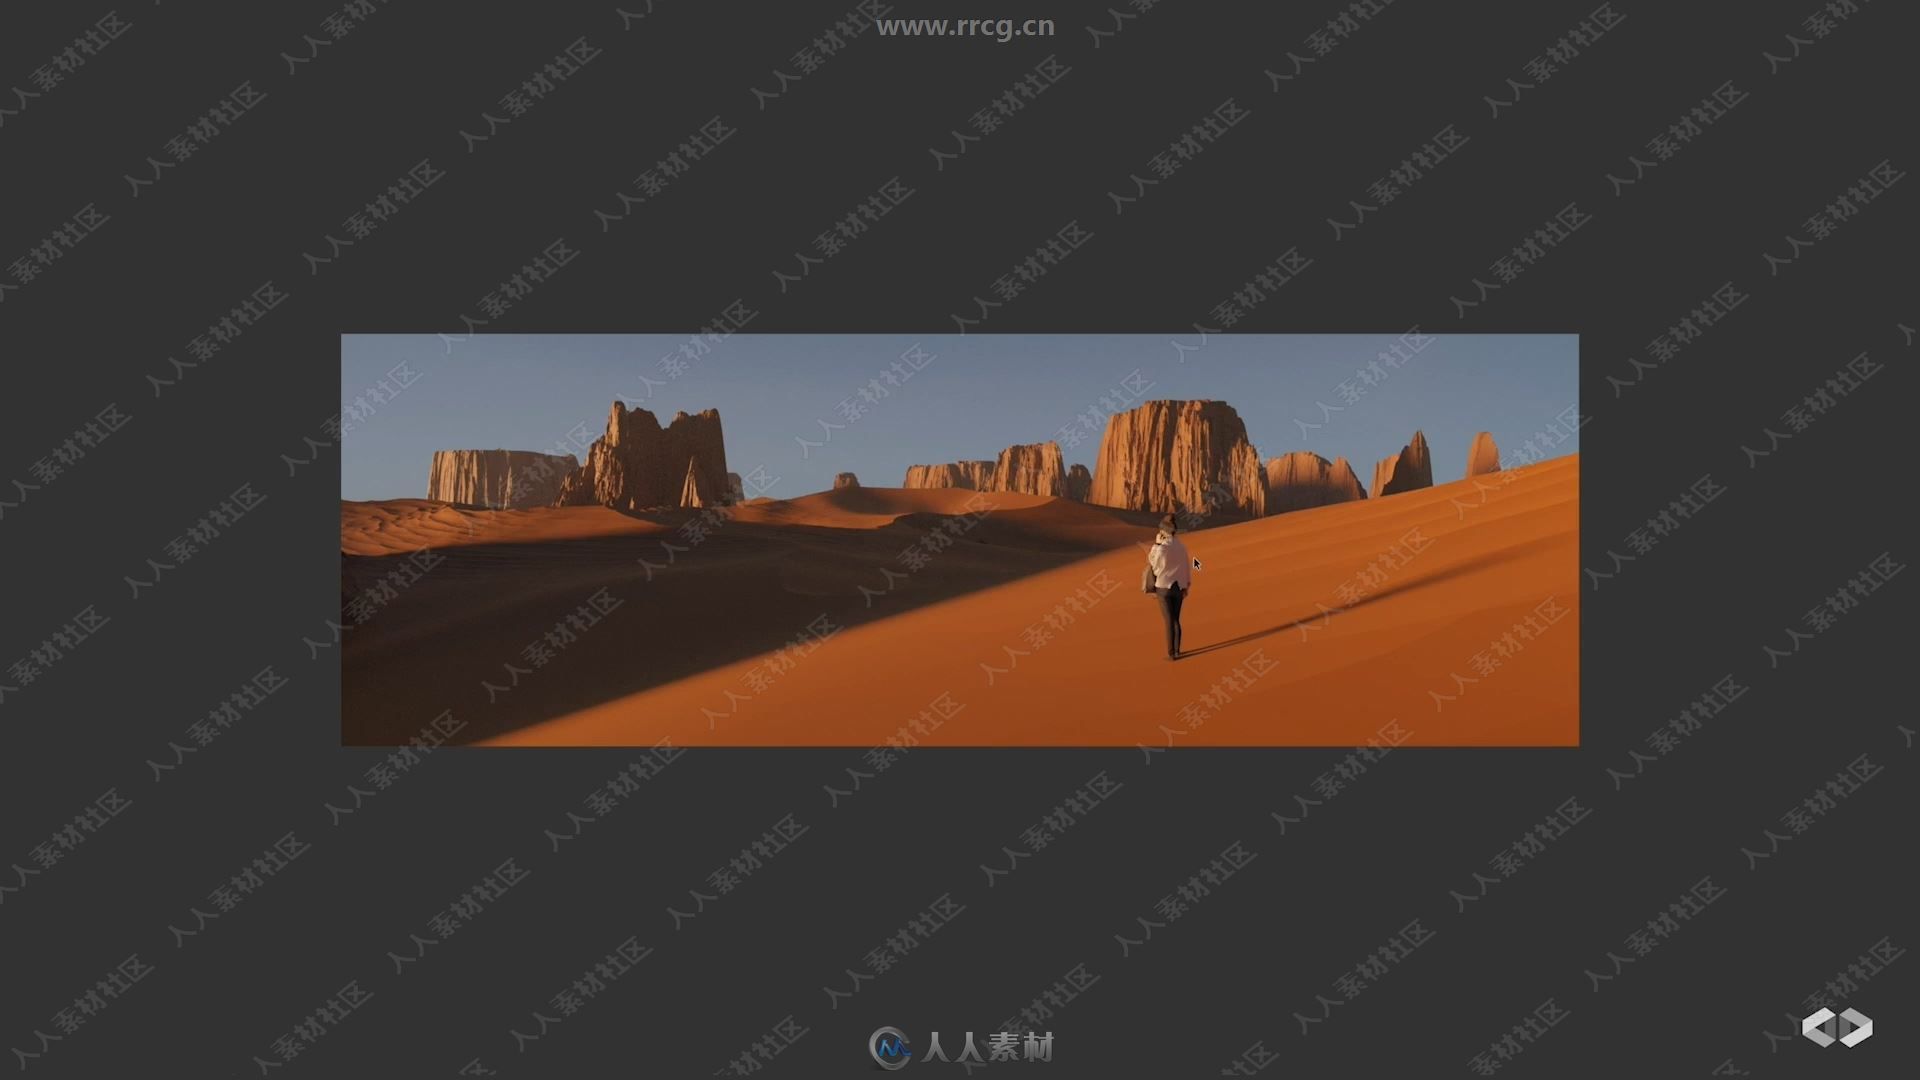 Blender地形景观实例制作视频教程